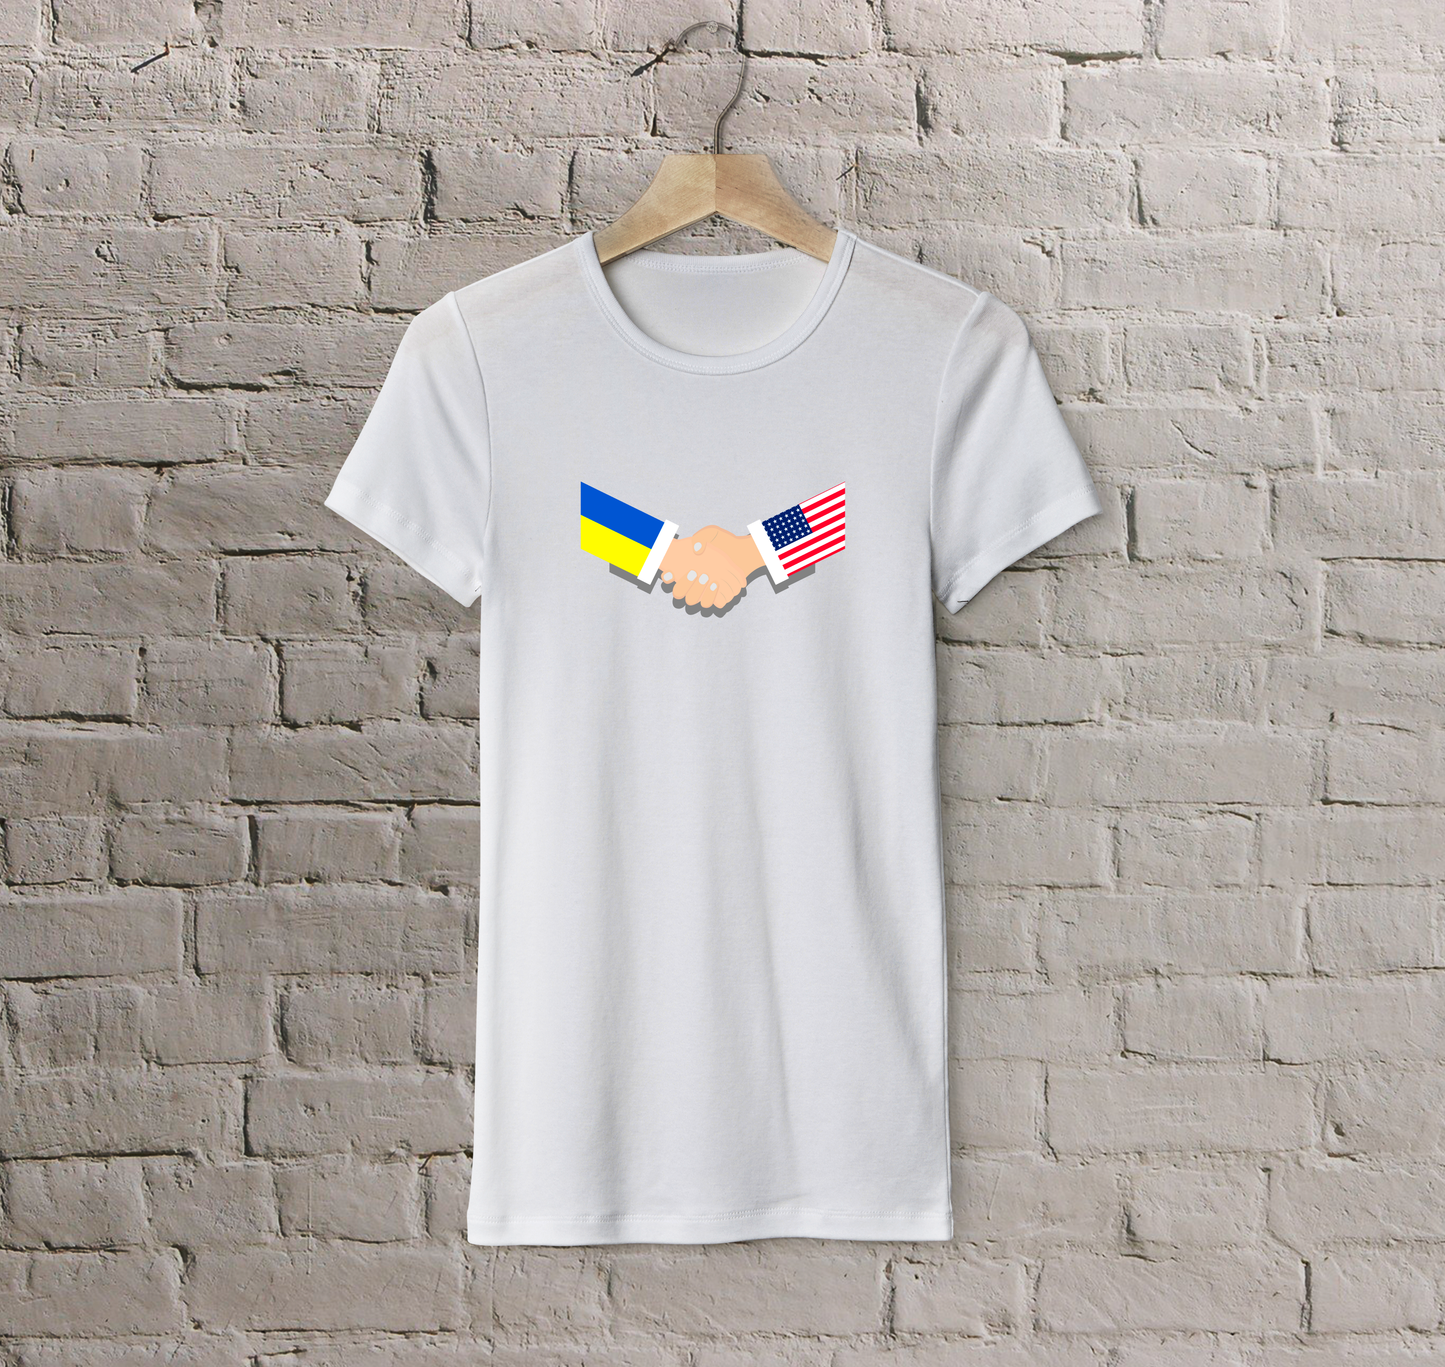 T-shirt USA + Ukraine (handshake)